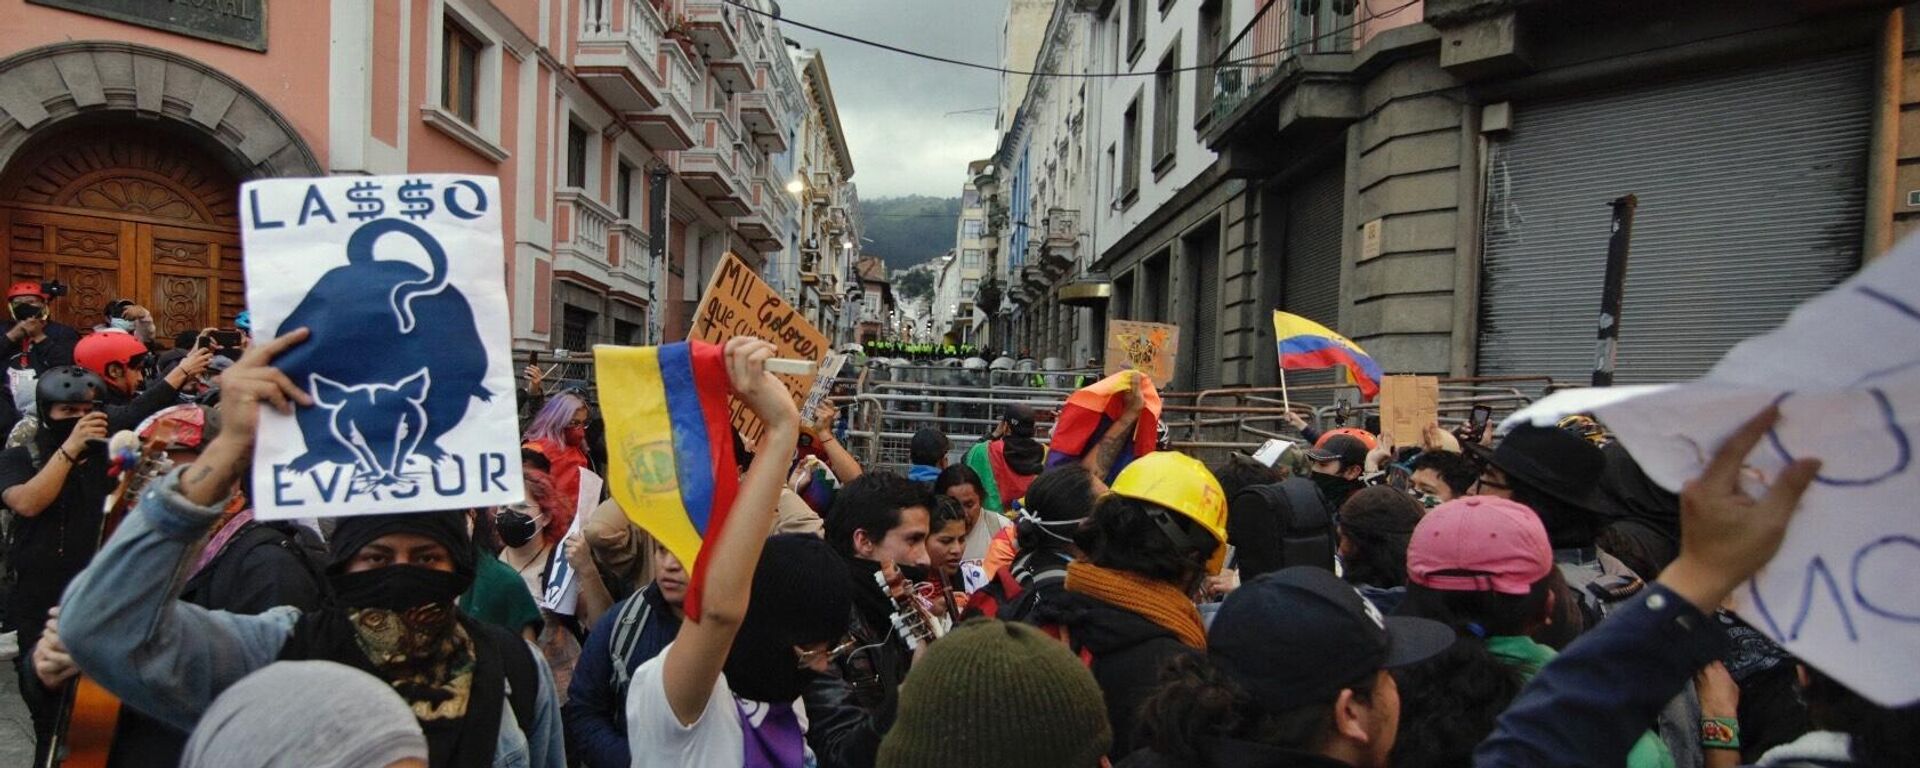 Las protestas en Ecuador contra el Gobierno de Guillermo Lasso - Sputnik Mundo, 1920, 21.06.2022